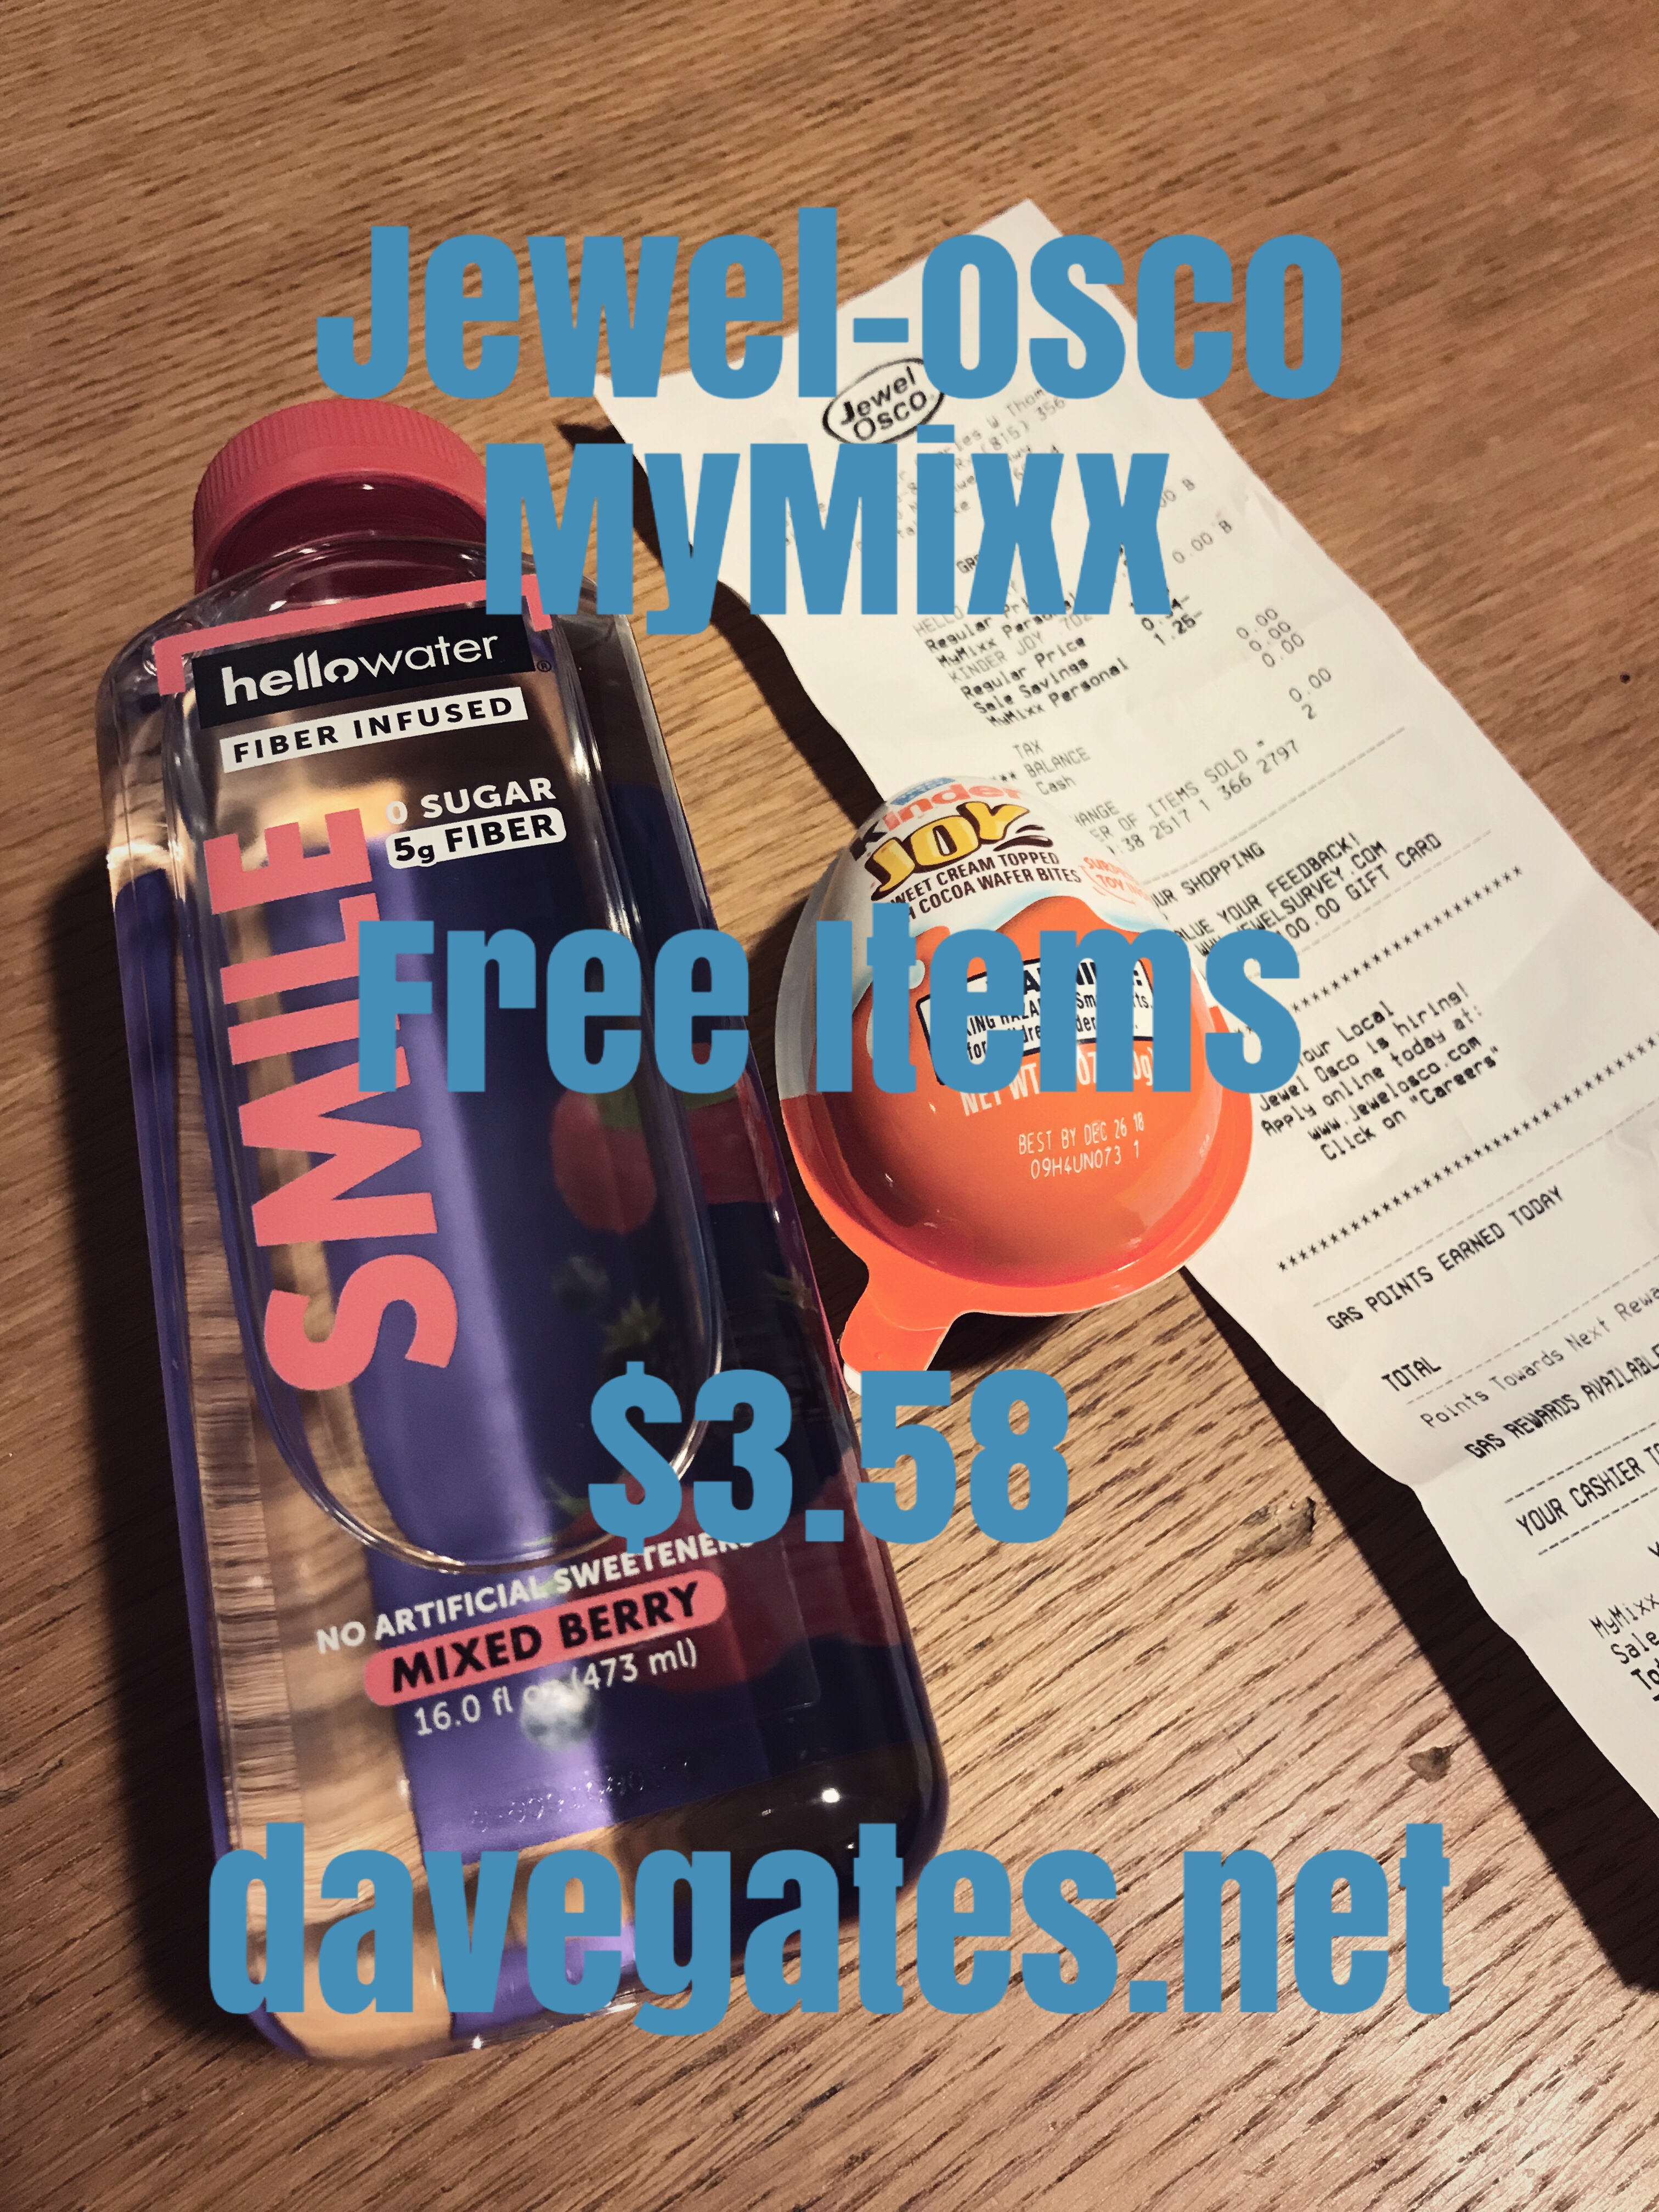 Jewel-Osco MyMixx Free Items davegates.net